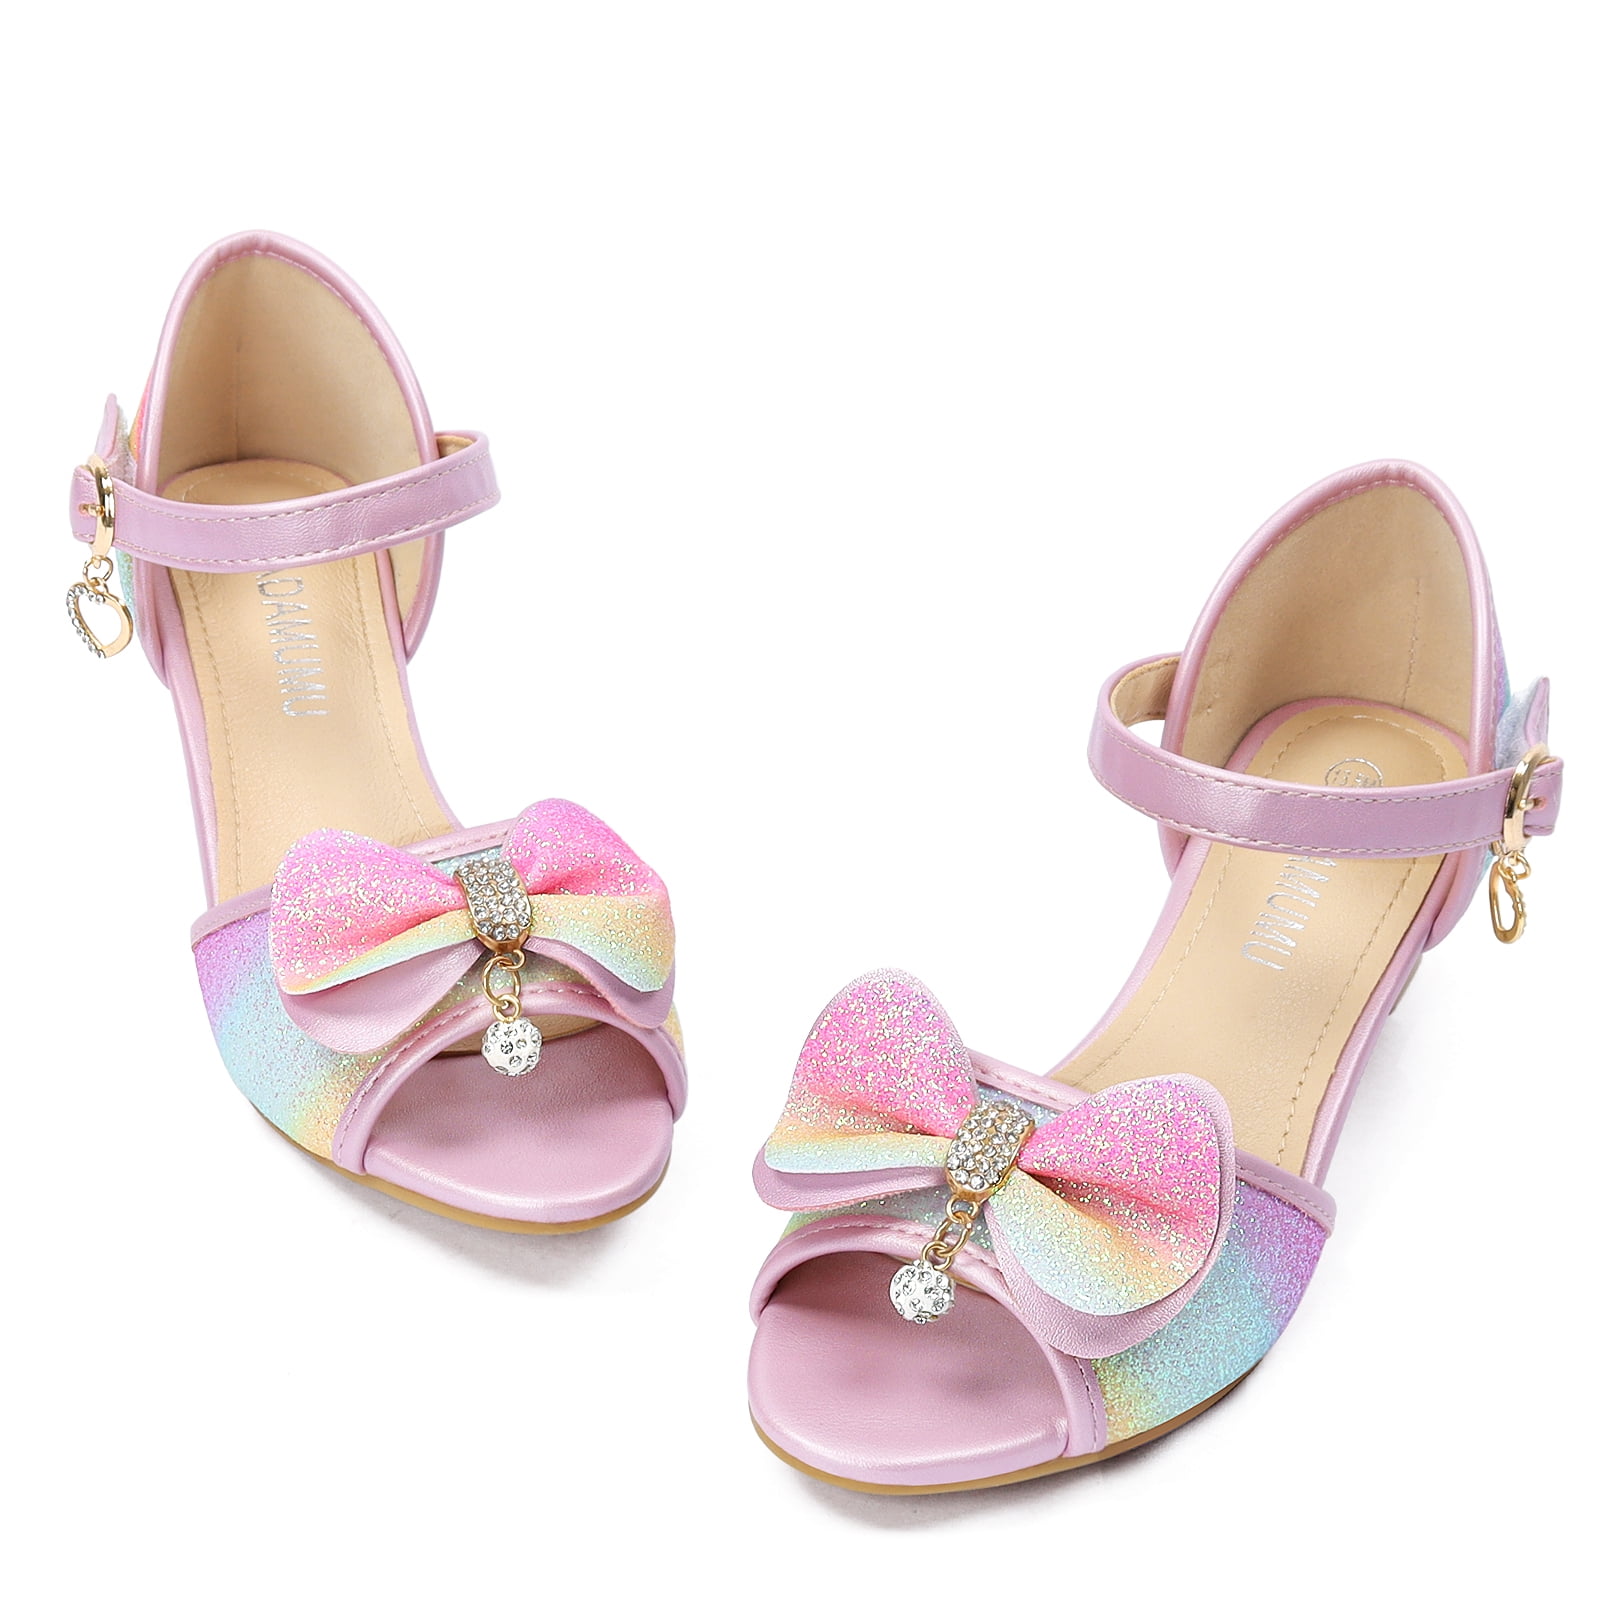 Badgley Mischka Little Kids Girls Heel Dress Shoes - Silver, 3 : Target